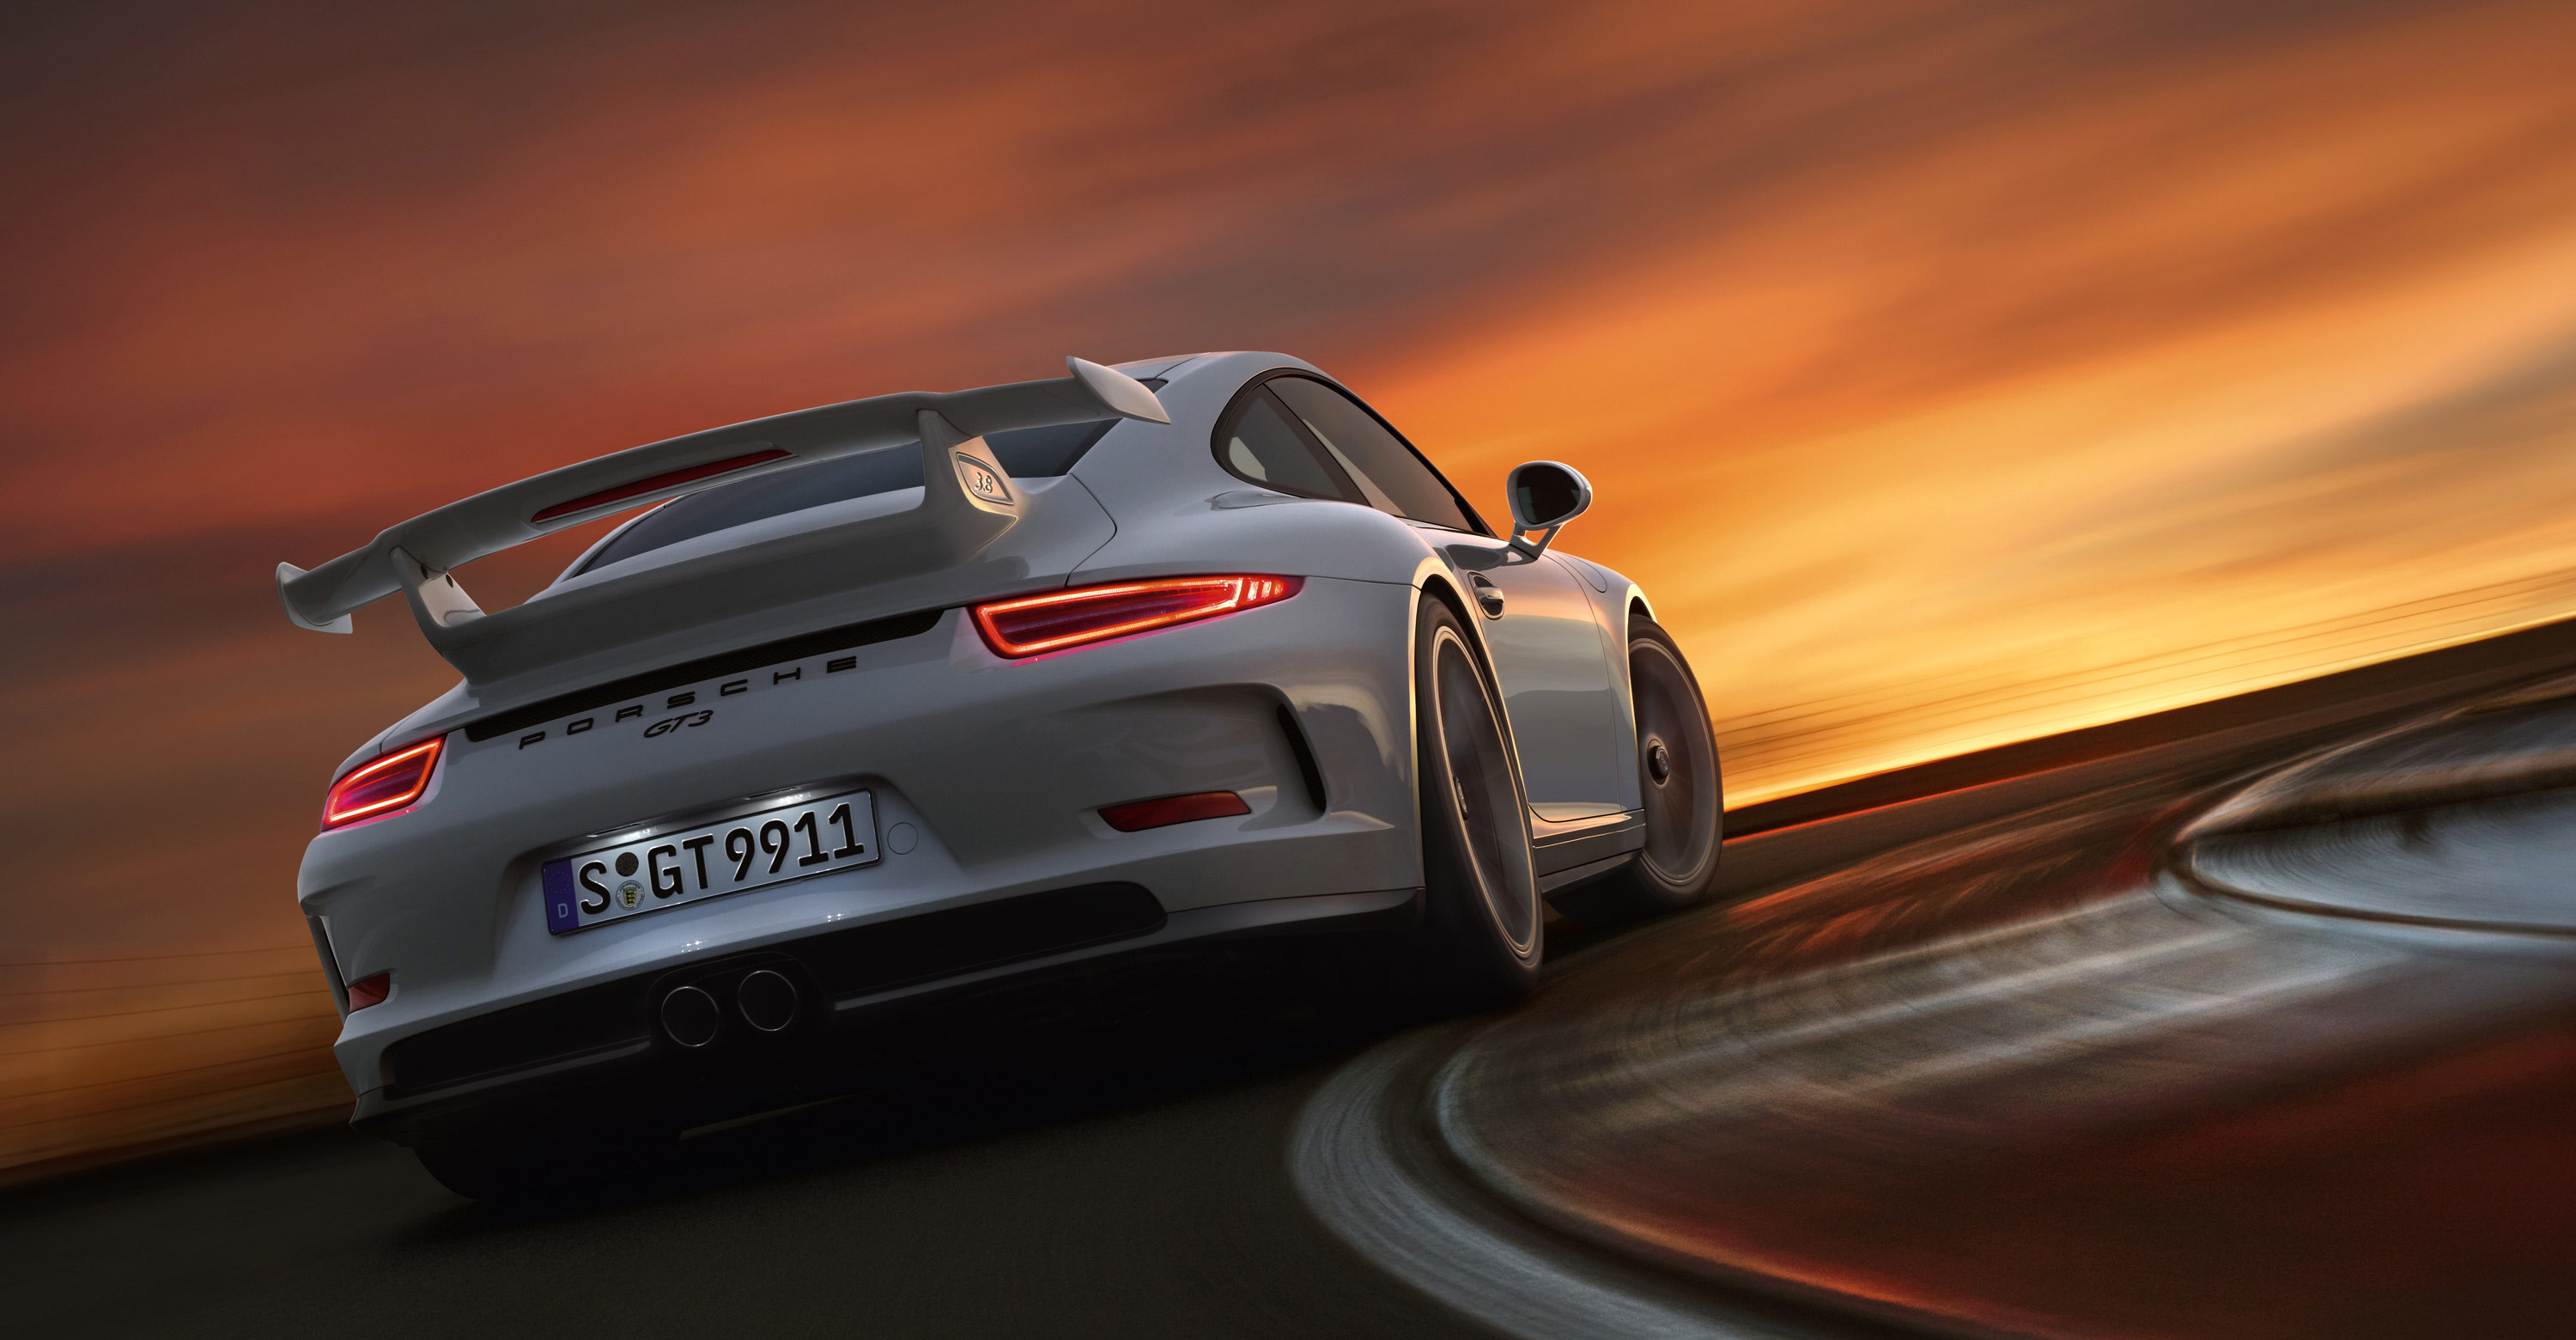 3000x1560 wallpaper.wiki-Porsche-911-Wallpaper-Free-Download-PIC-